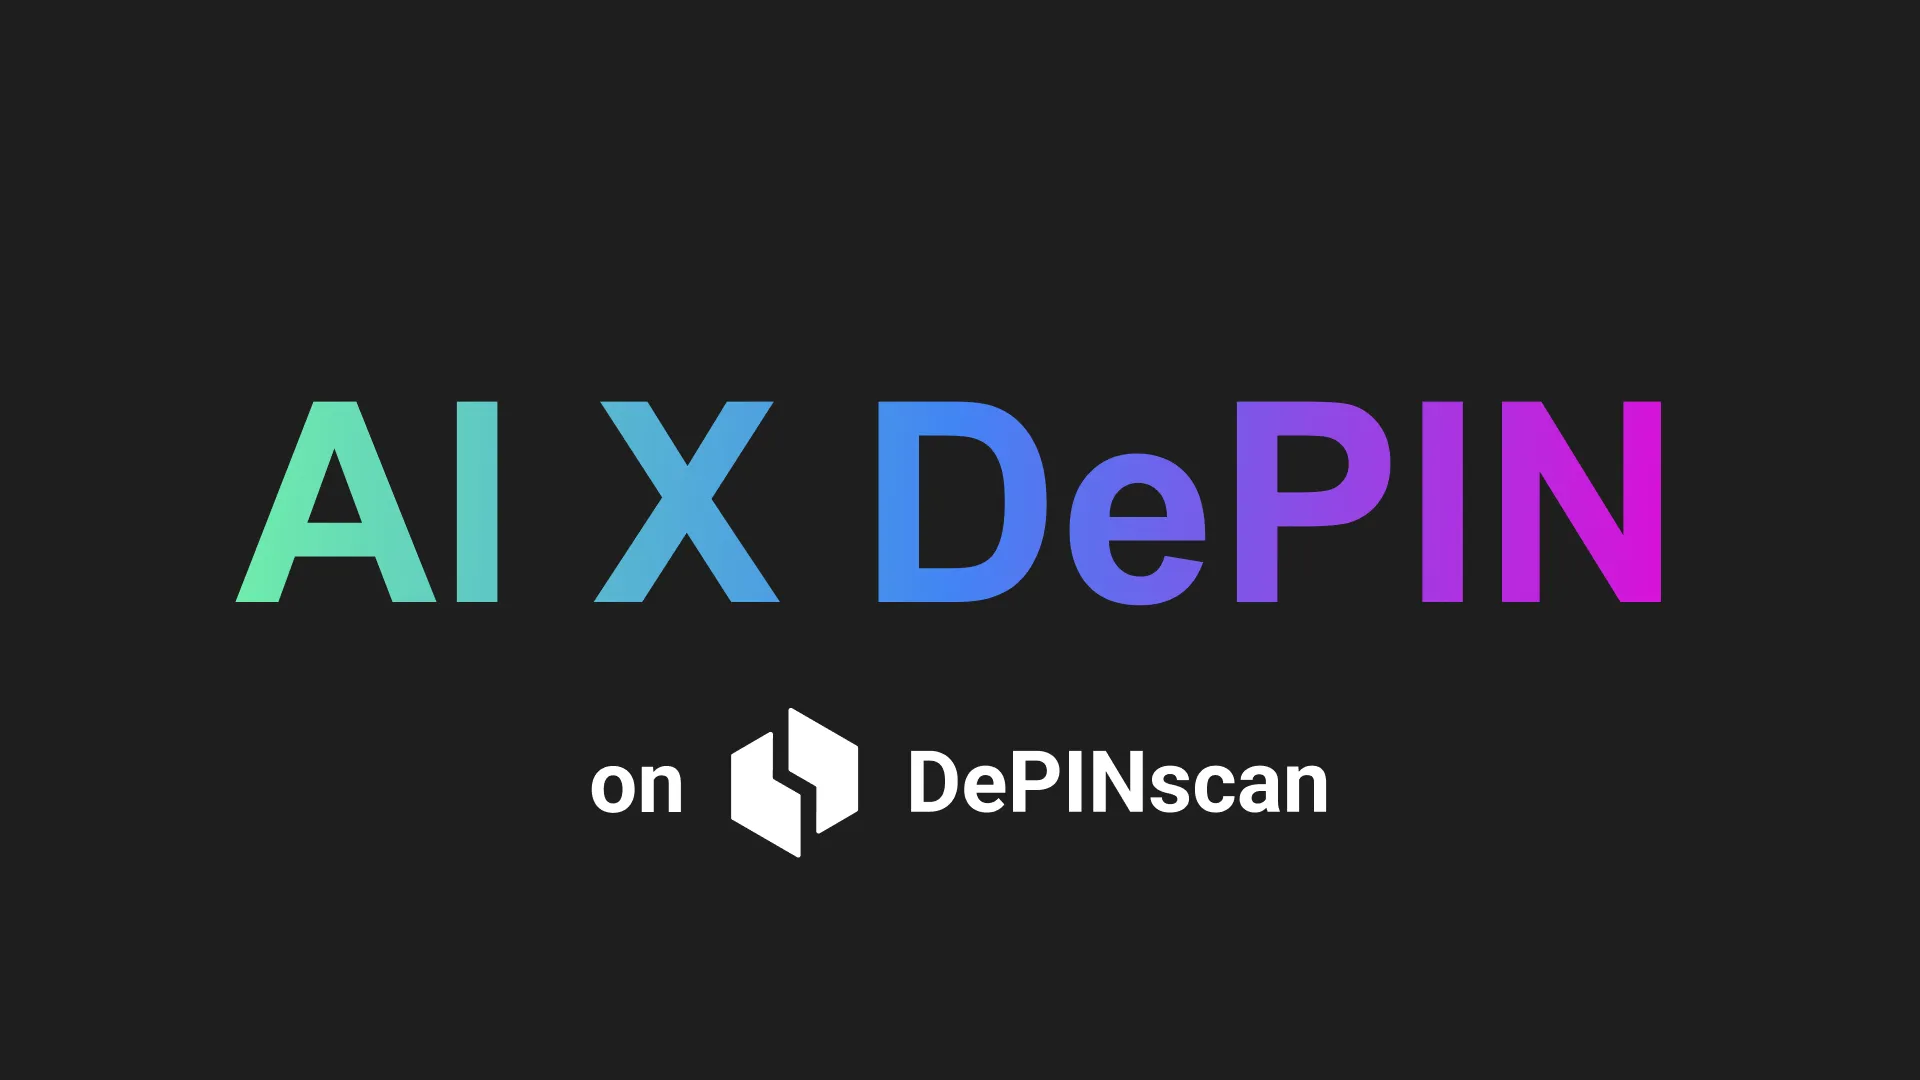 現在 DePINscan を追跡中: AI X DePIN